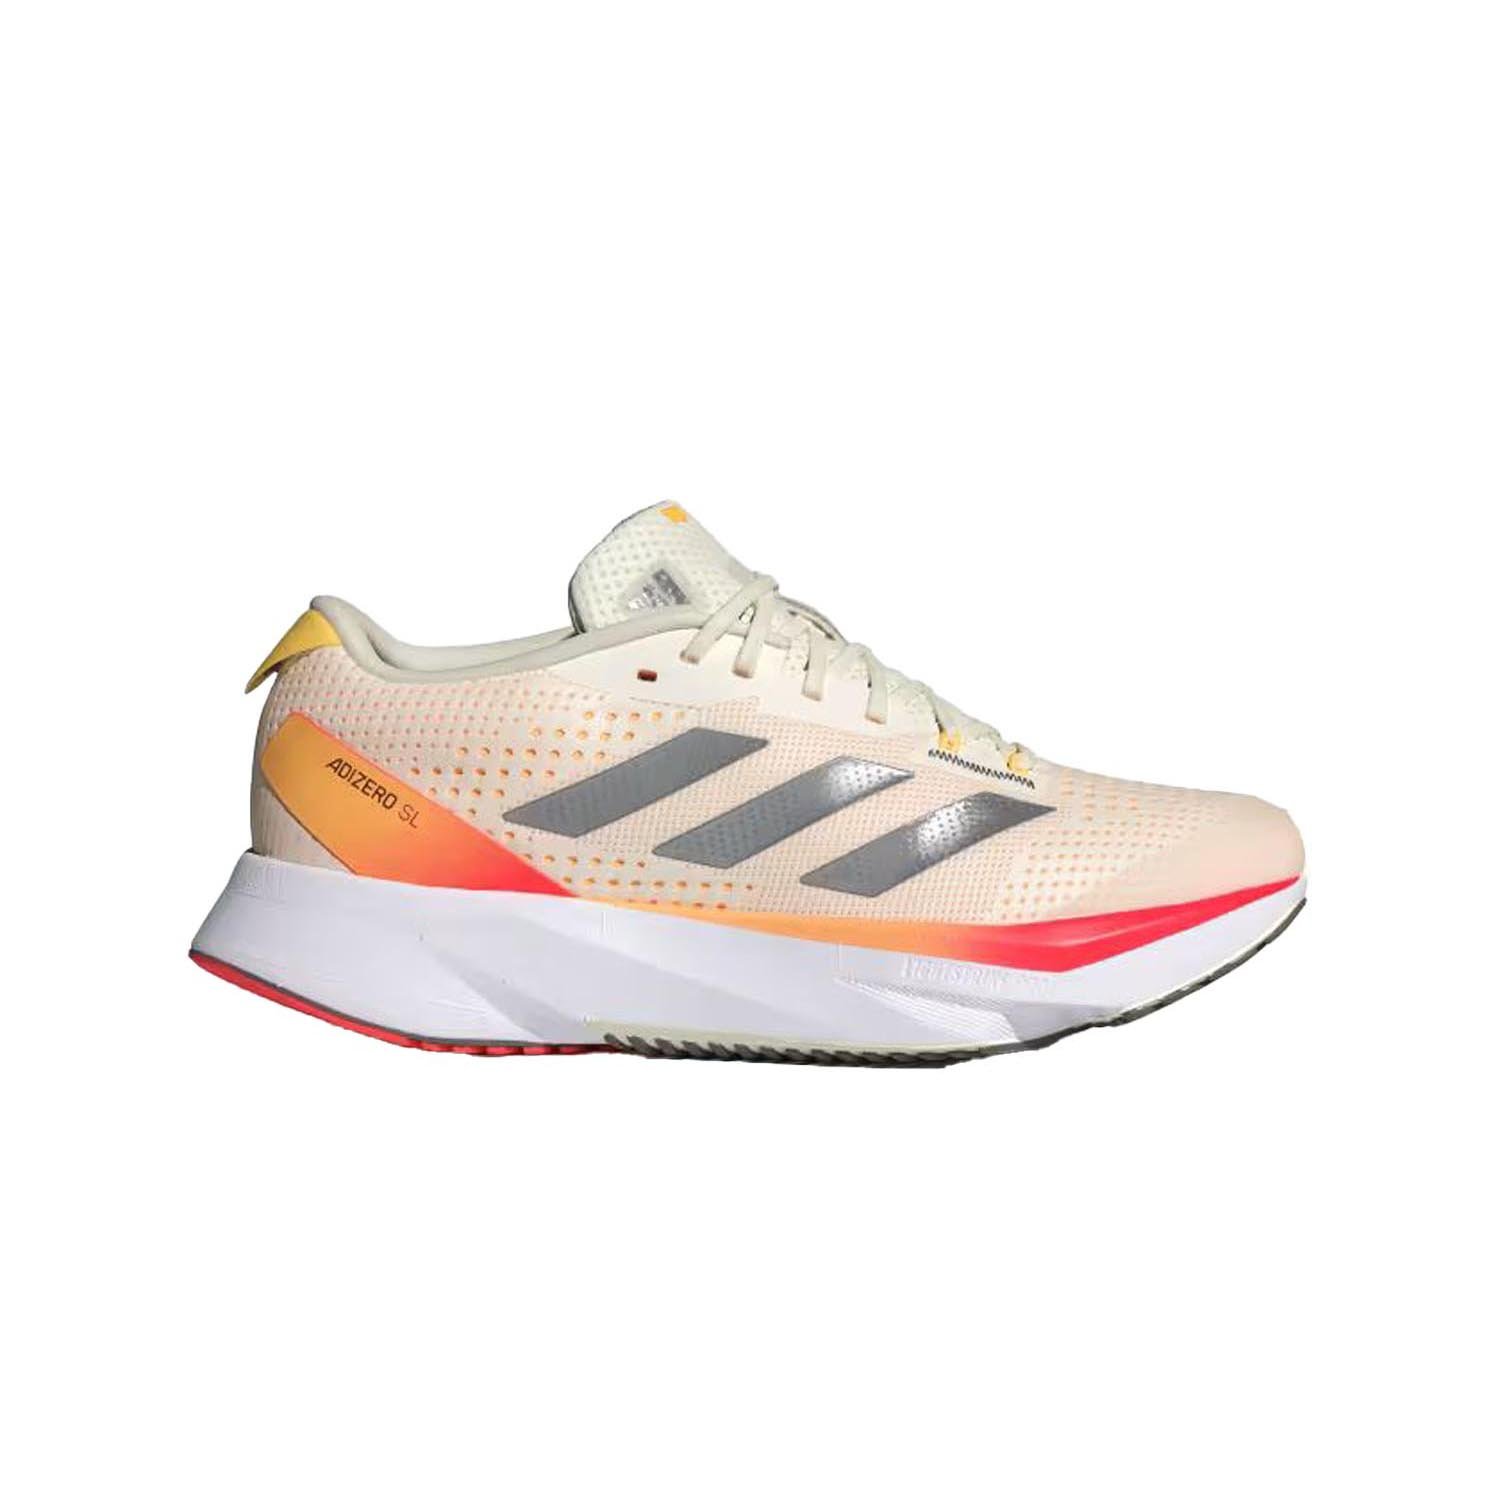 Adidas Adizero SL Kadın Yol Koşu Ayakkabısı - Bej - 1